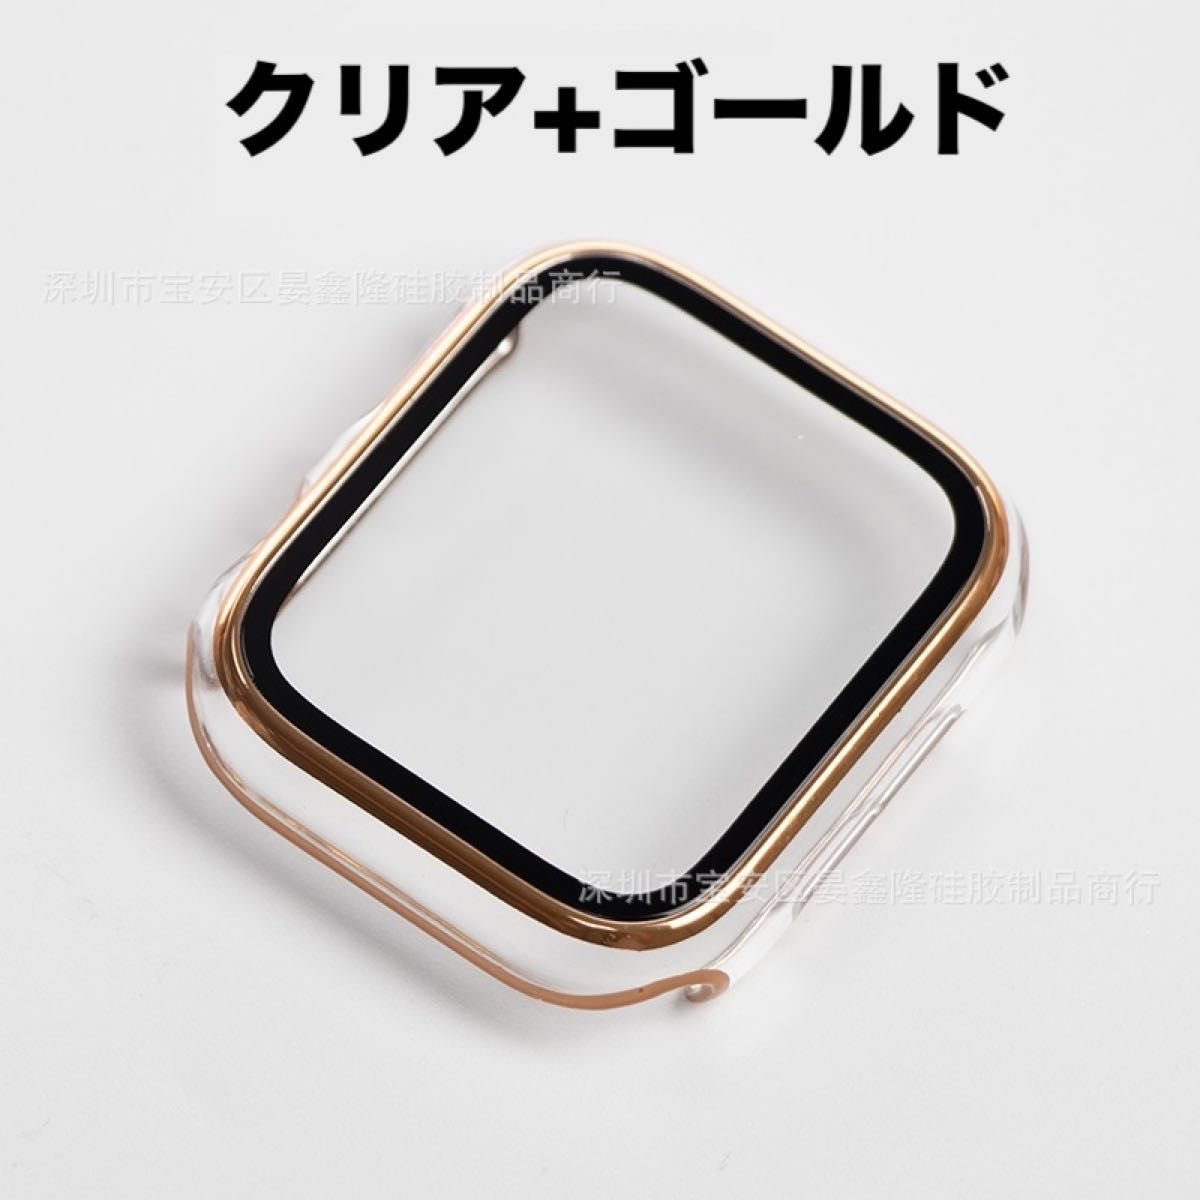 【59028541】Apple Watch アップル ウォッチ プラスチック 文字盤 ケース カバー 41mm　クリア+ゴールド